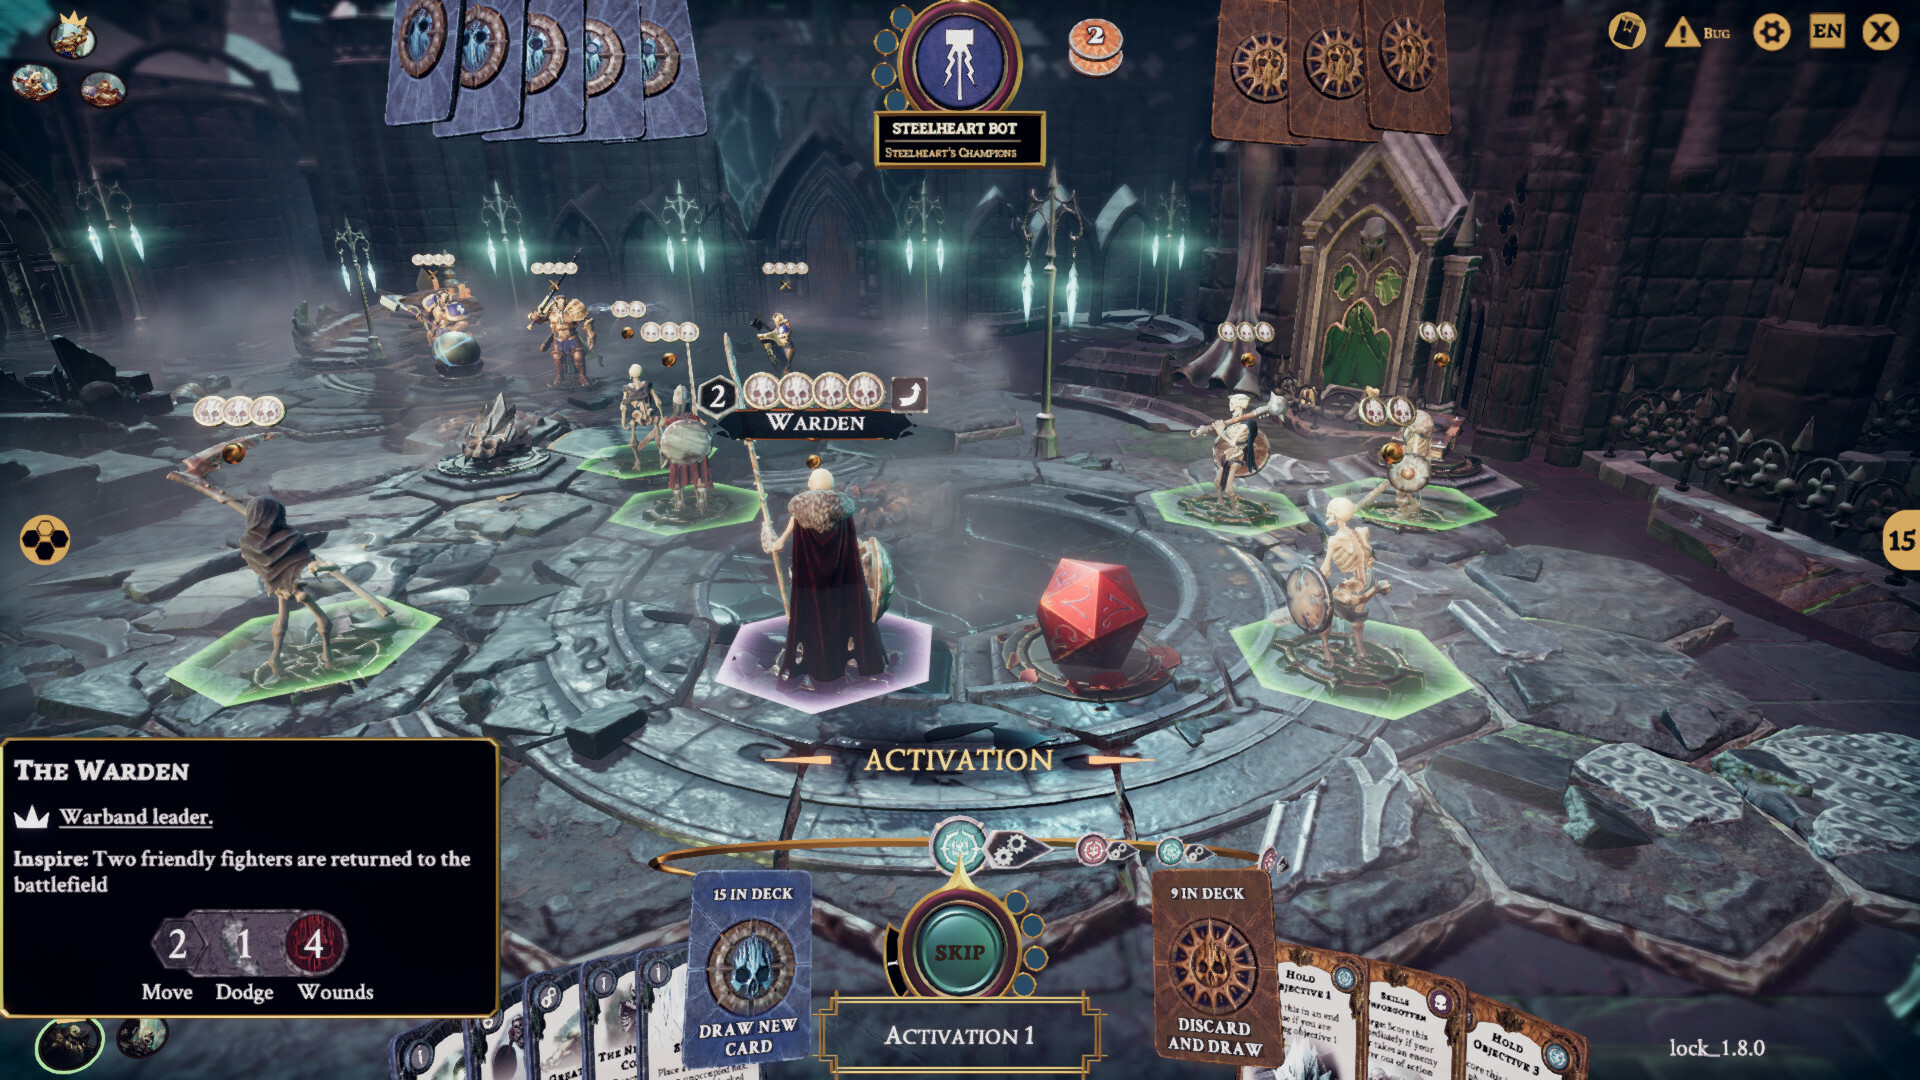 Save 50% on Warhammer Underworlds - Shadespire Edition on Steam